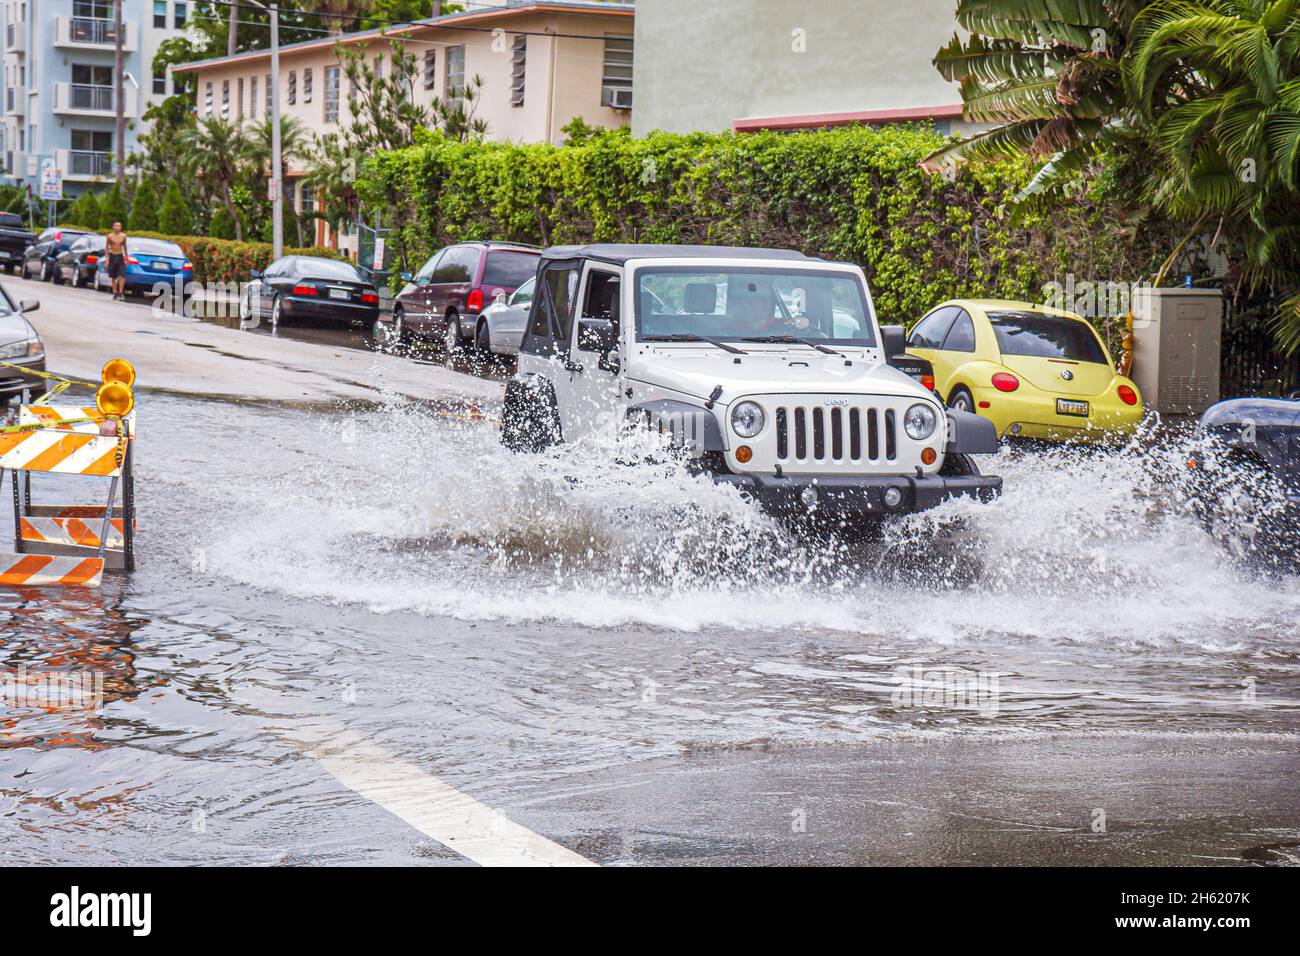 Miami Beach Florida, Alton Road, marée haute, inondation de rue Jeep voiture automobile barbotage changement climatique marées montantes Banque D'Images